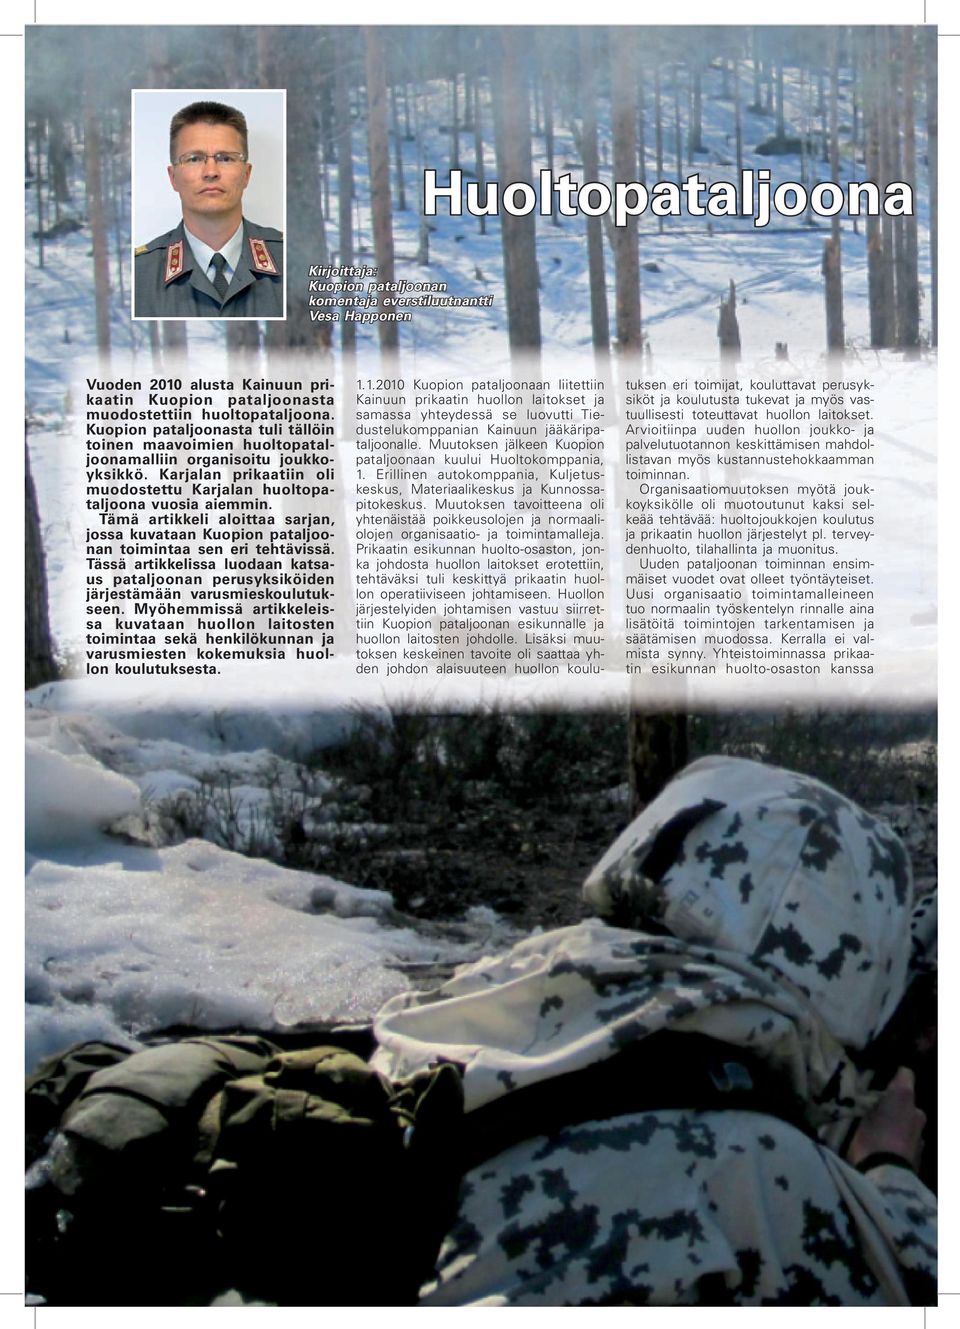 Tämä artikkeli aloittaa sarjan, jossa kuvataan Kuopion pataljoonan toimintaa sen eri tehtävissä. Tässä artikkelissa luodaan katsaus pataljoonan perusyksiköiden järjestämään varusmieskoulutukseen.